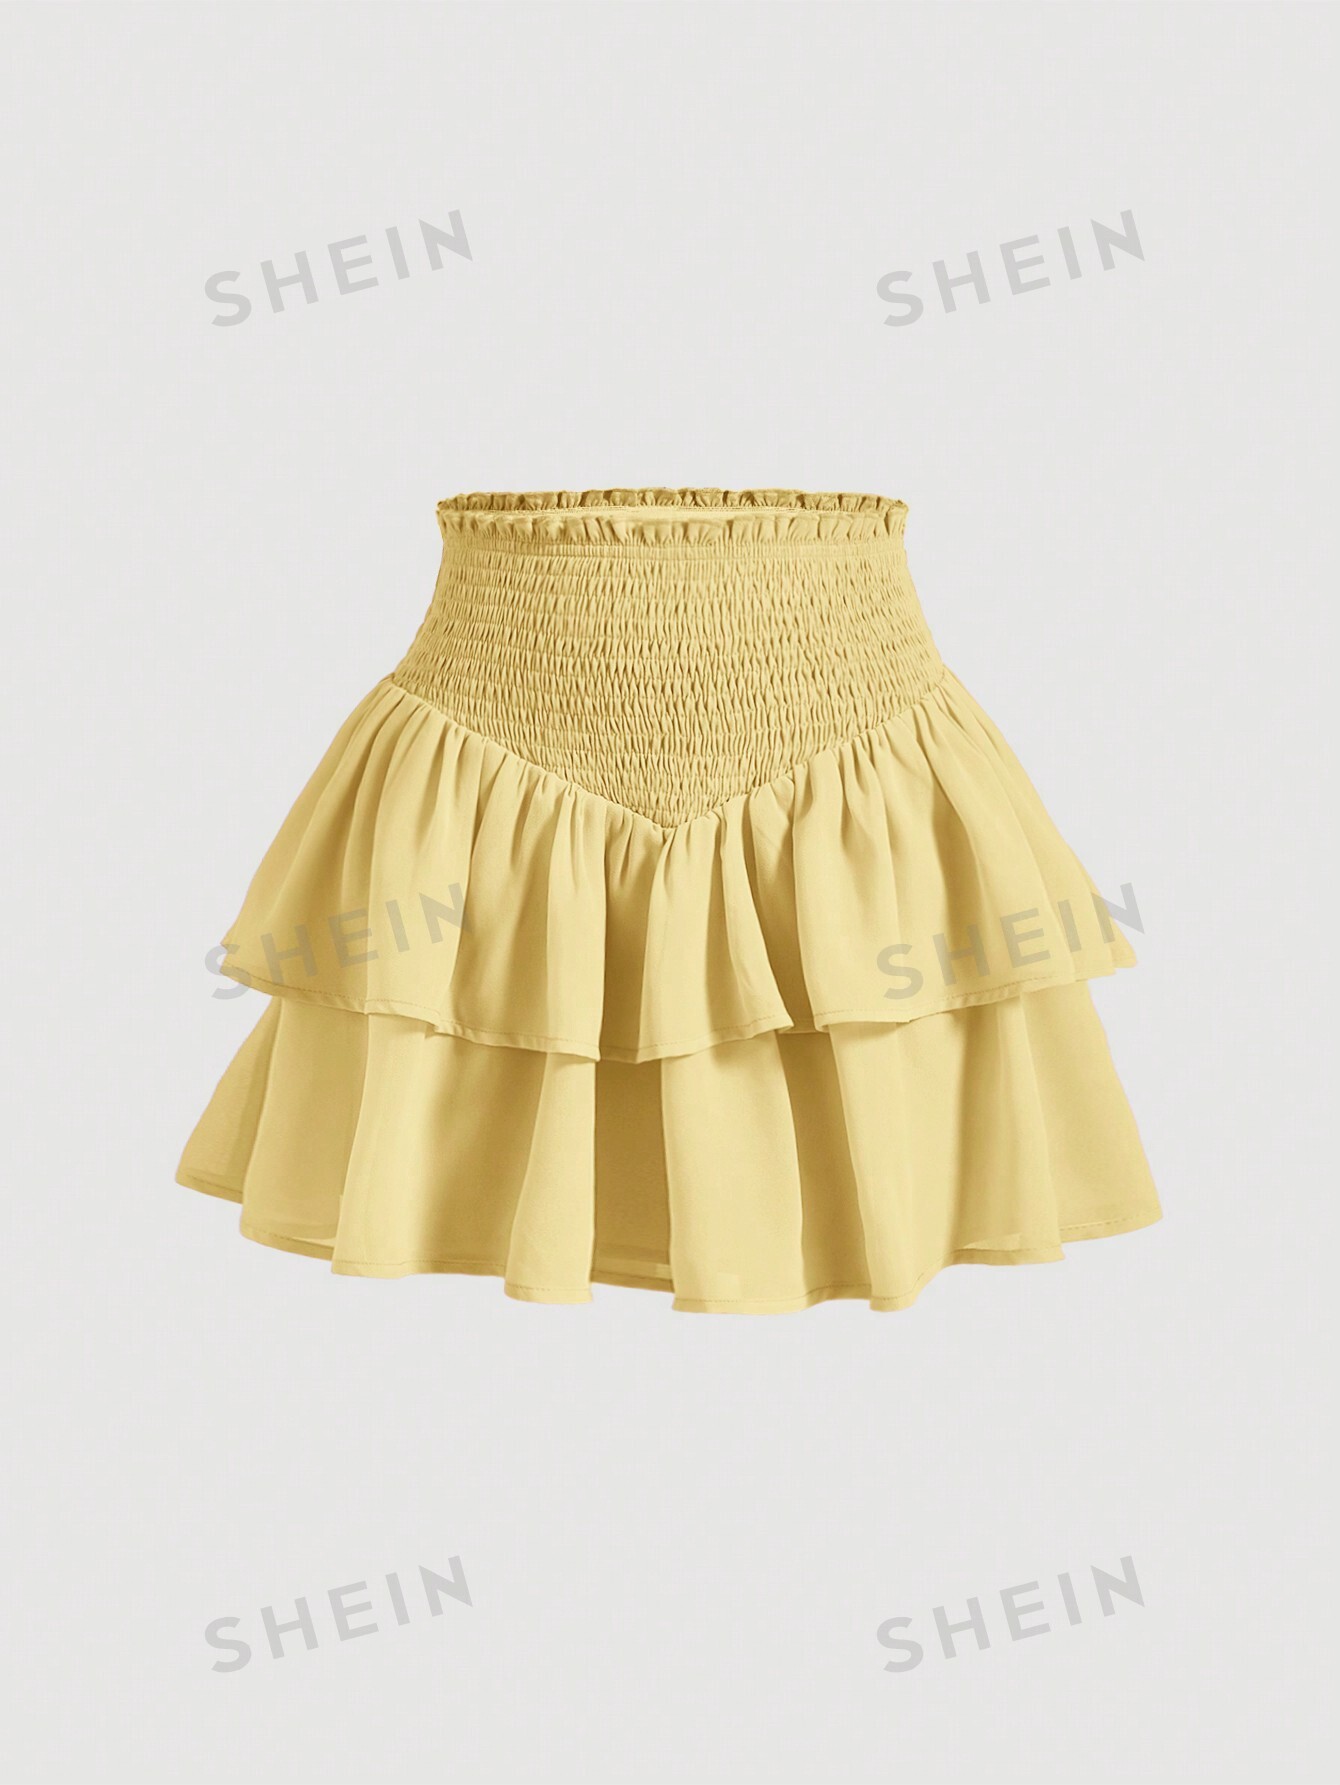 SHEIN MOD SHEIN MOD женская двухслойная мини-юбка с асимметричным подолом и рюшами и присборенной талией, желтый юбка в стиле харадзюку с завышенной талией летняя повседневная готическая юбка трапеция с асимметричным подолом новая модная одежда для р